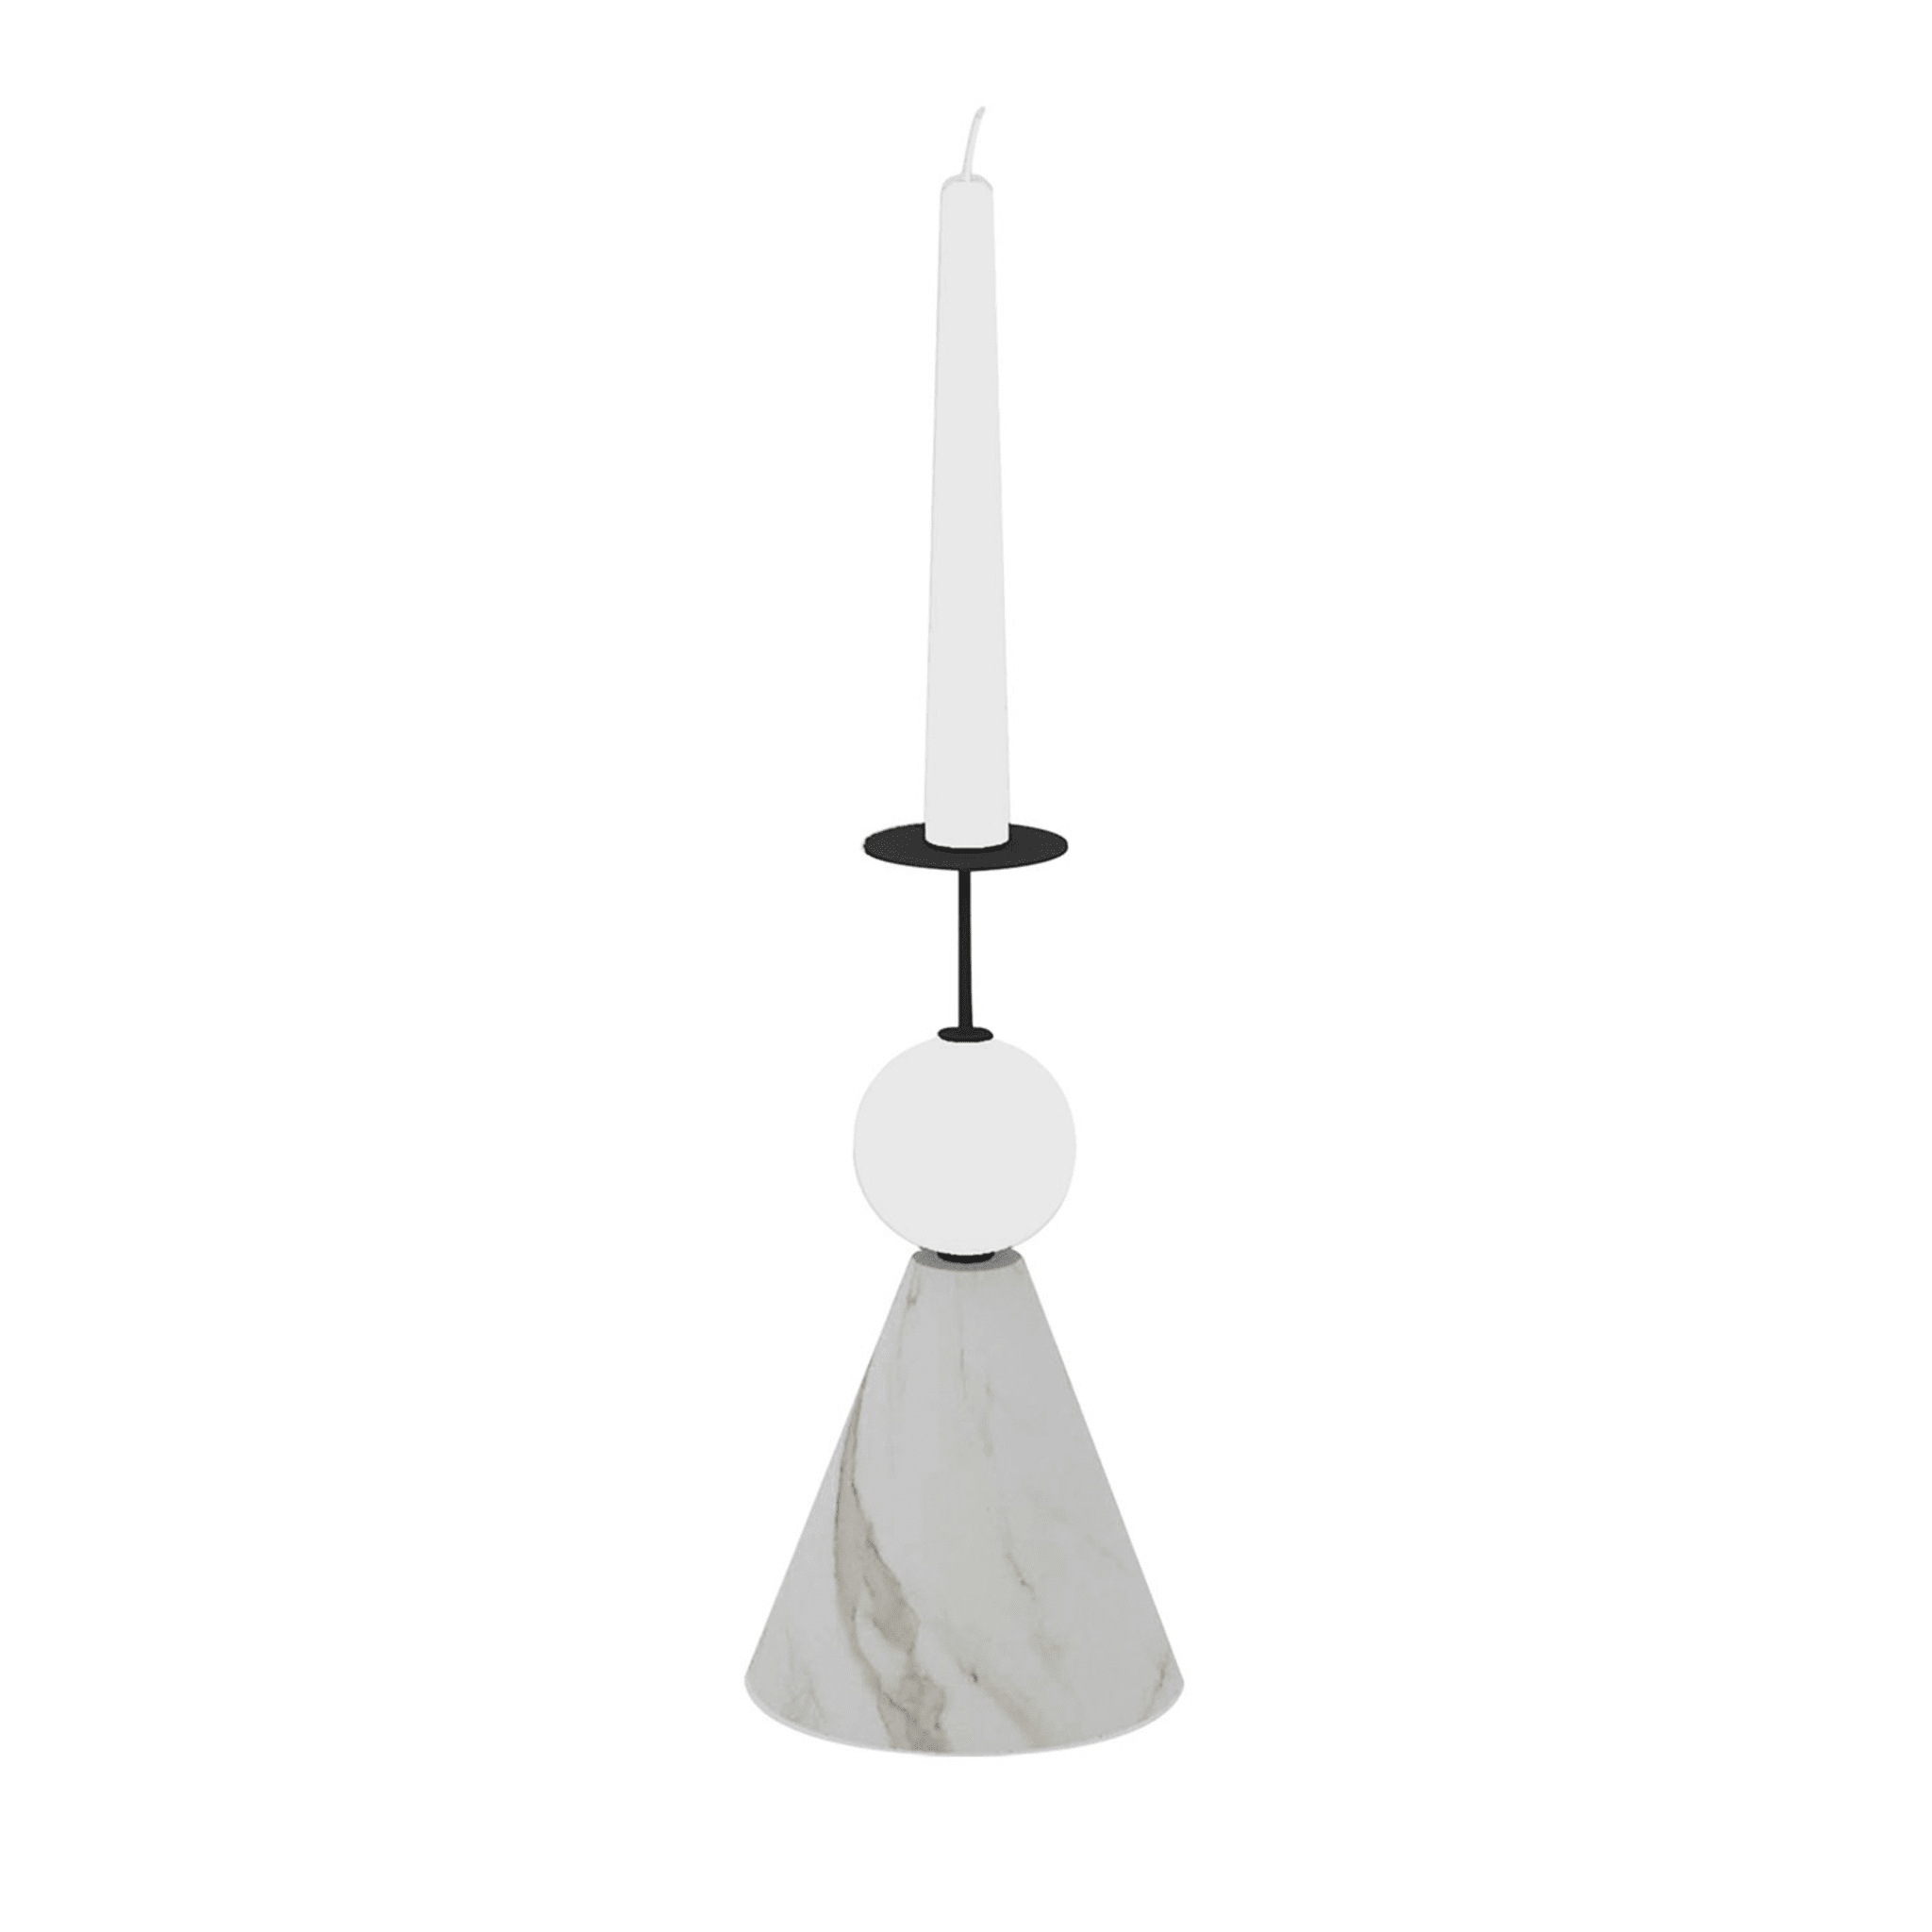 Raccontami Weißer Carrara, Schwarzer und weißer konischer Kerzenständer - Hauptansicht